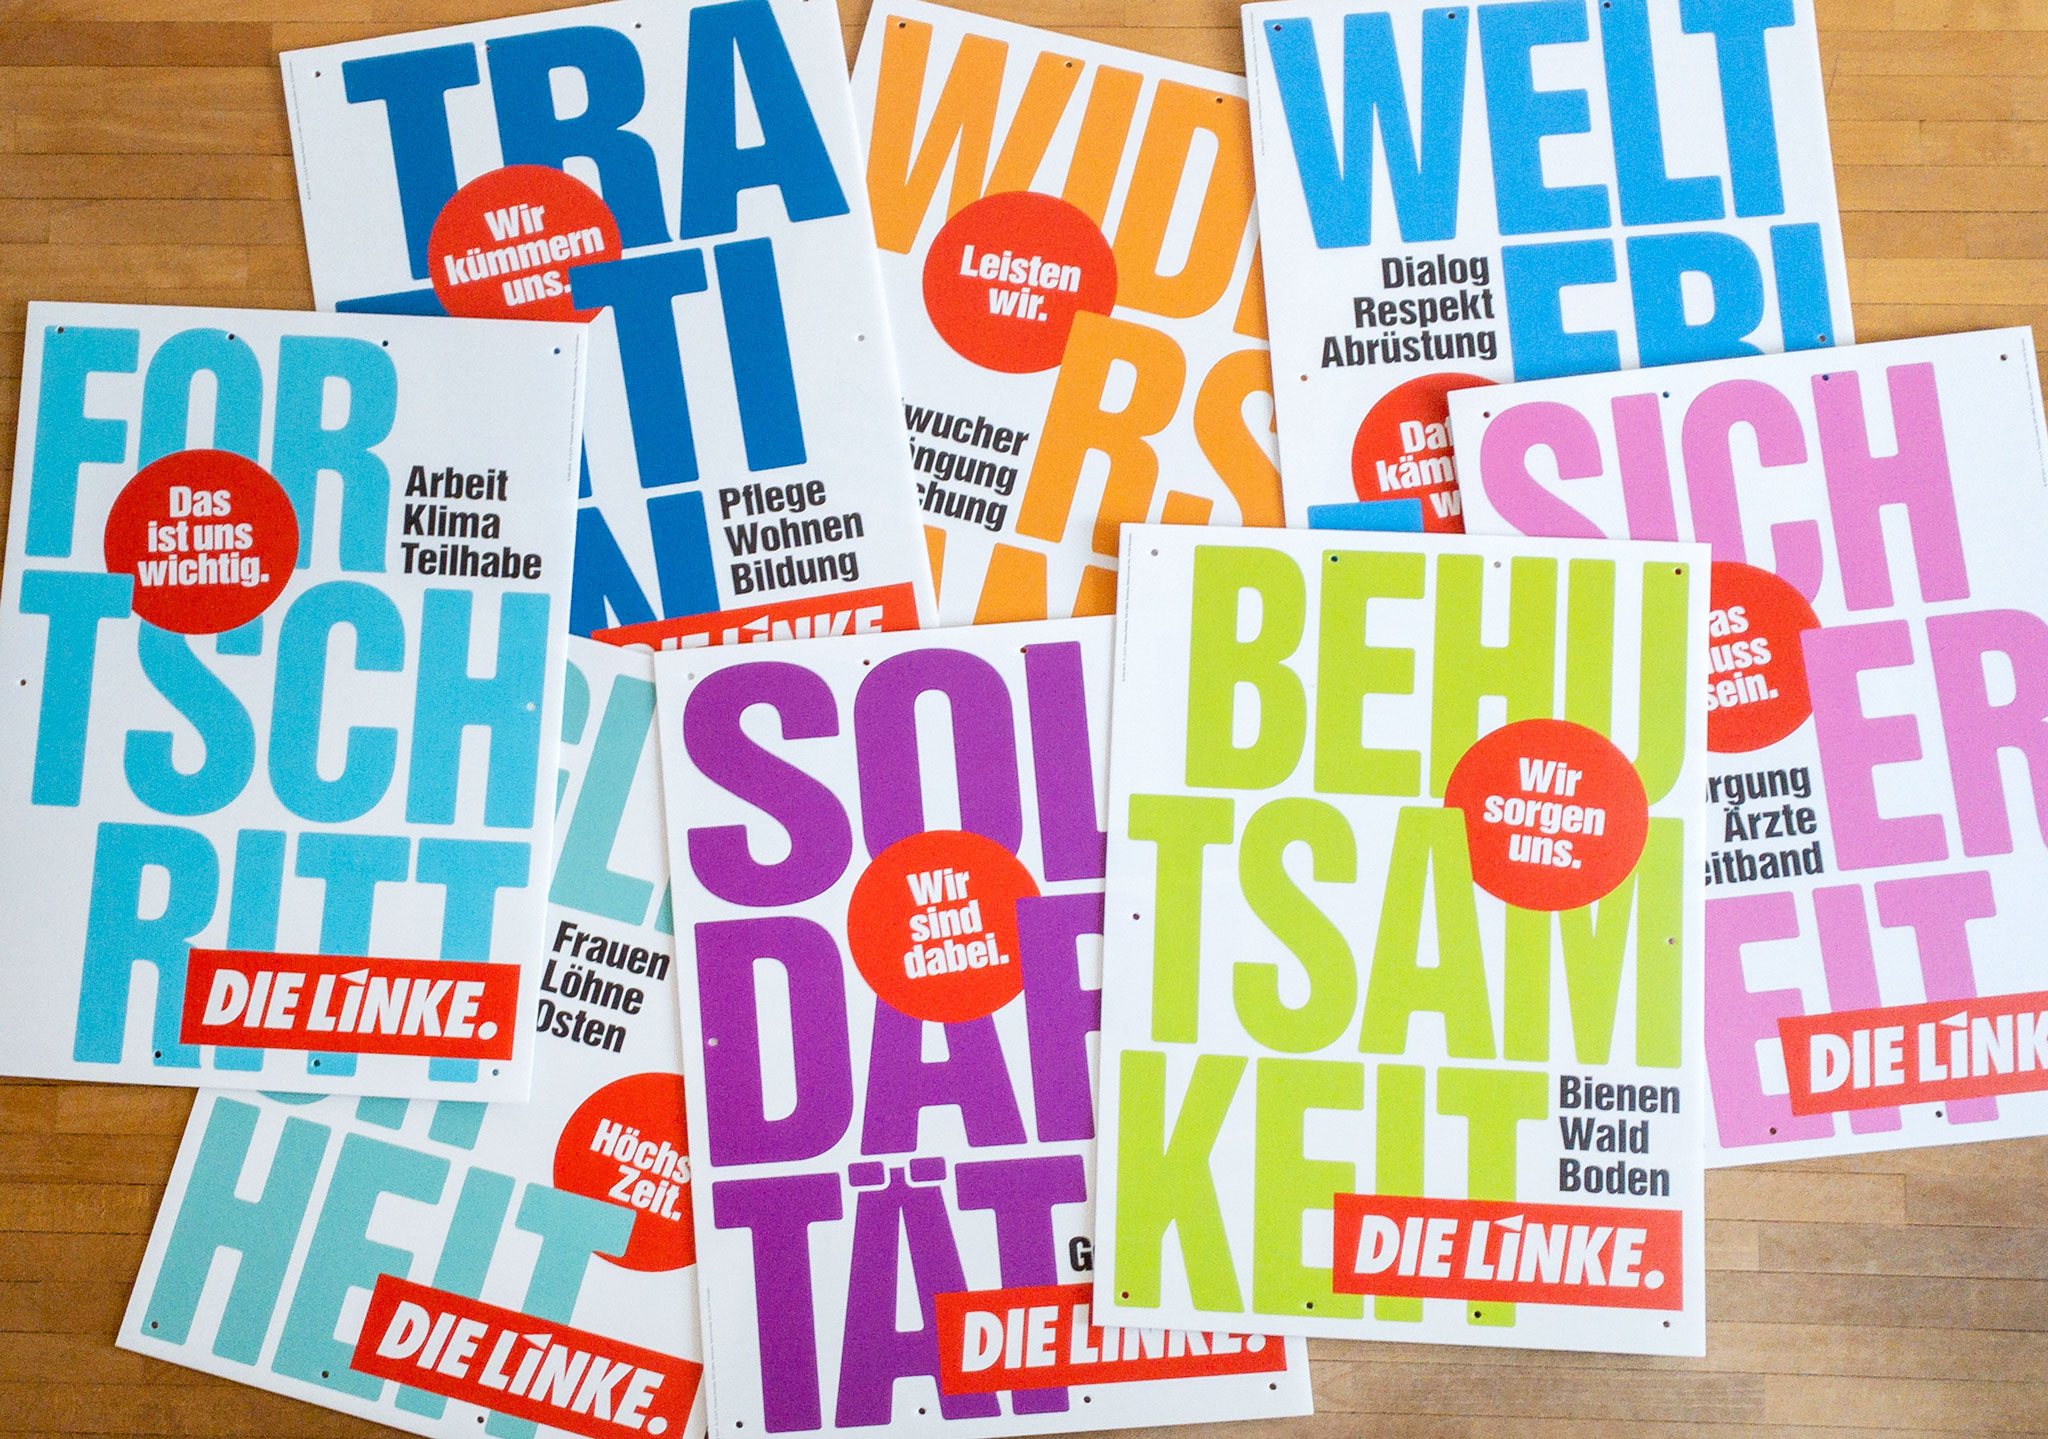 Foto einiger der Plakate zur Landtagswahl